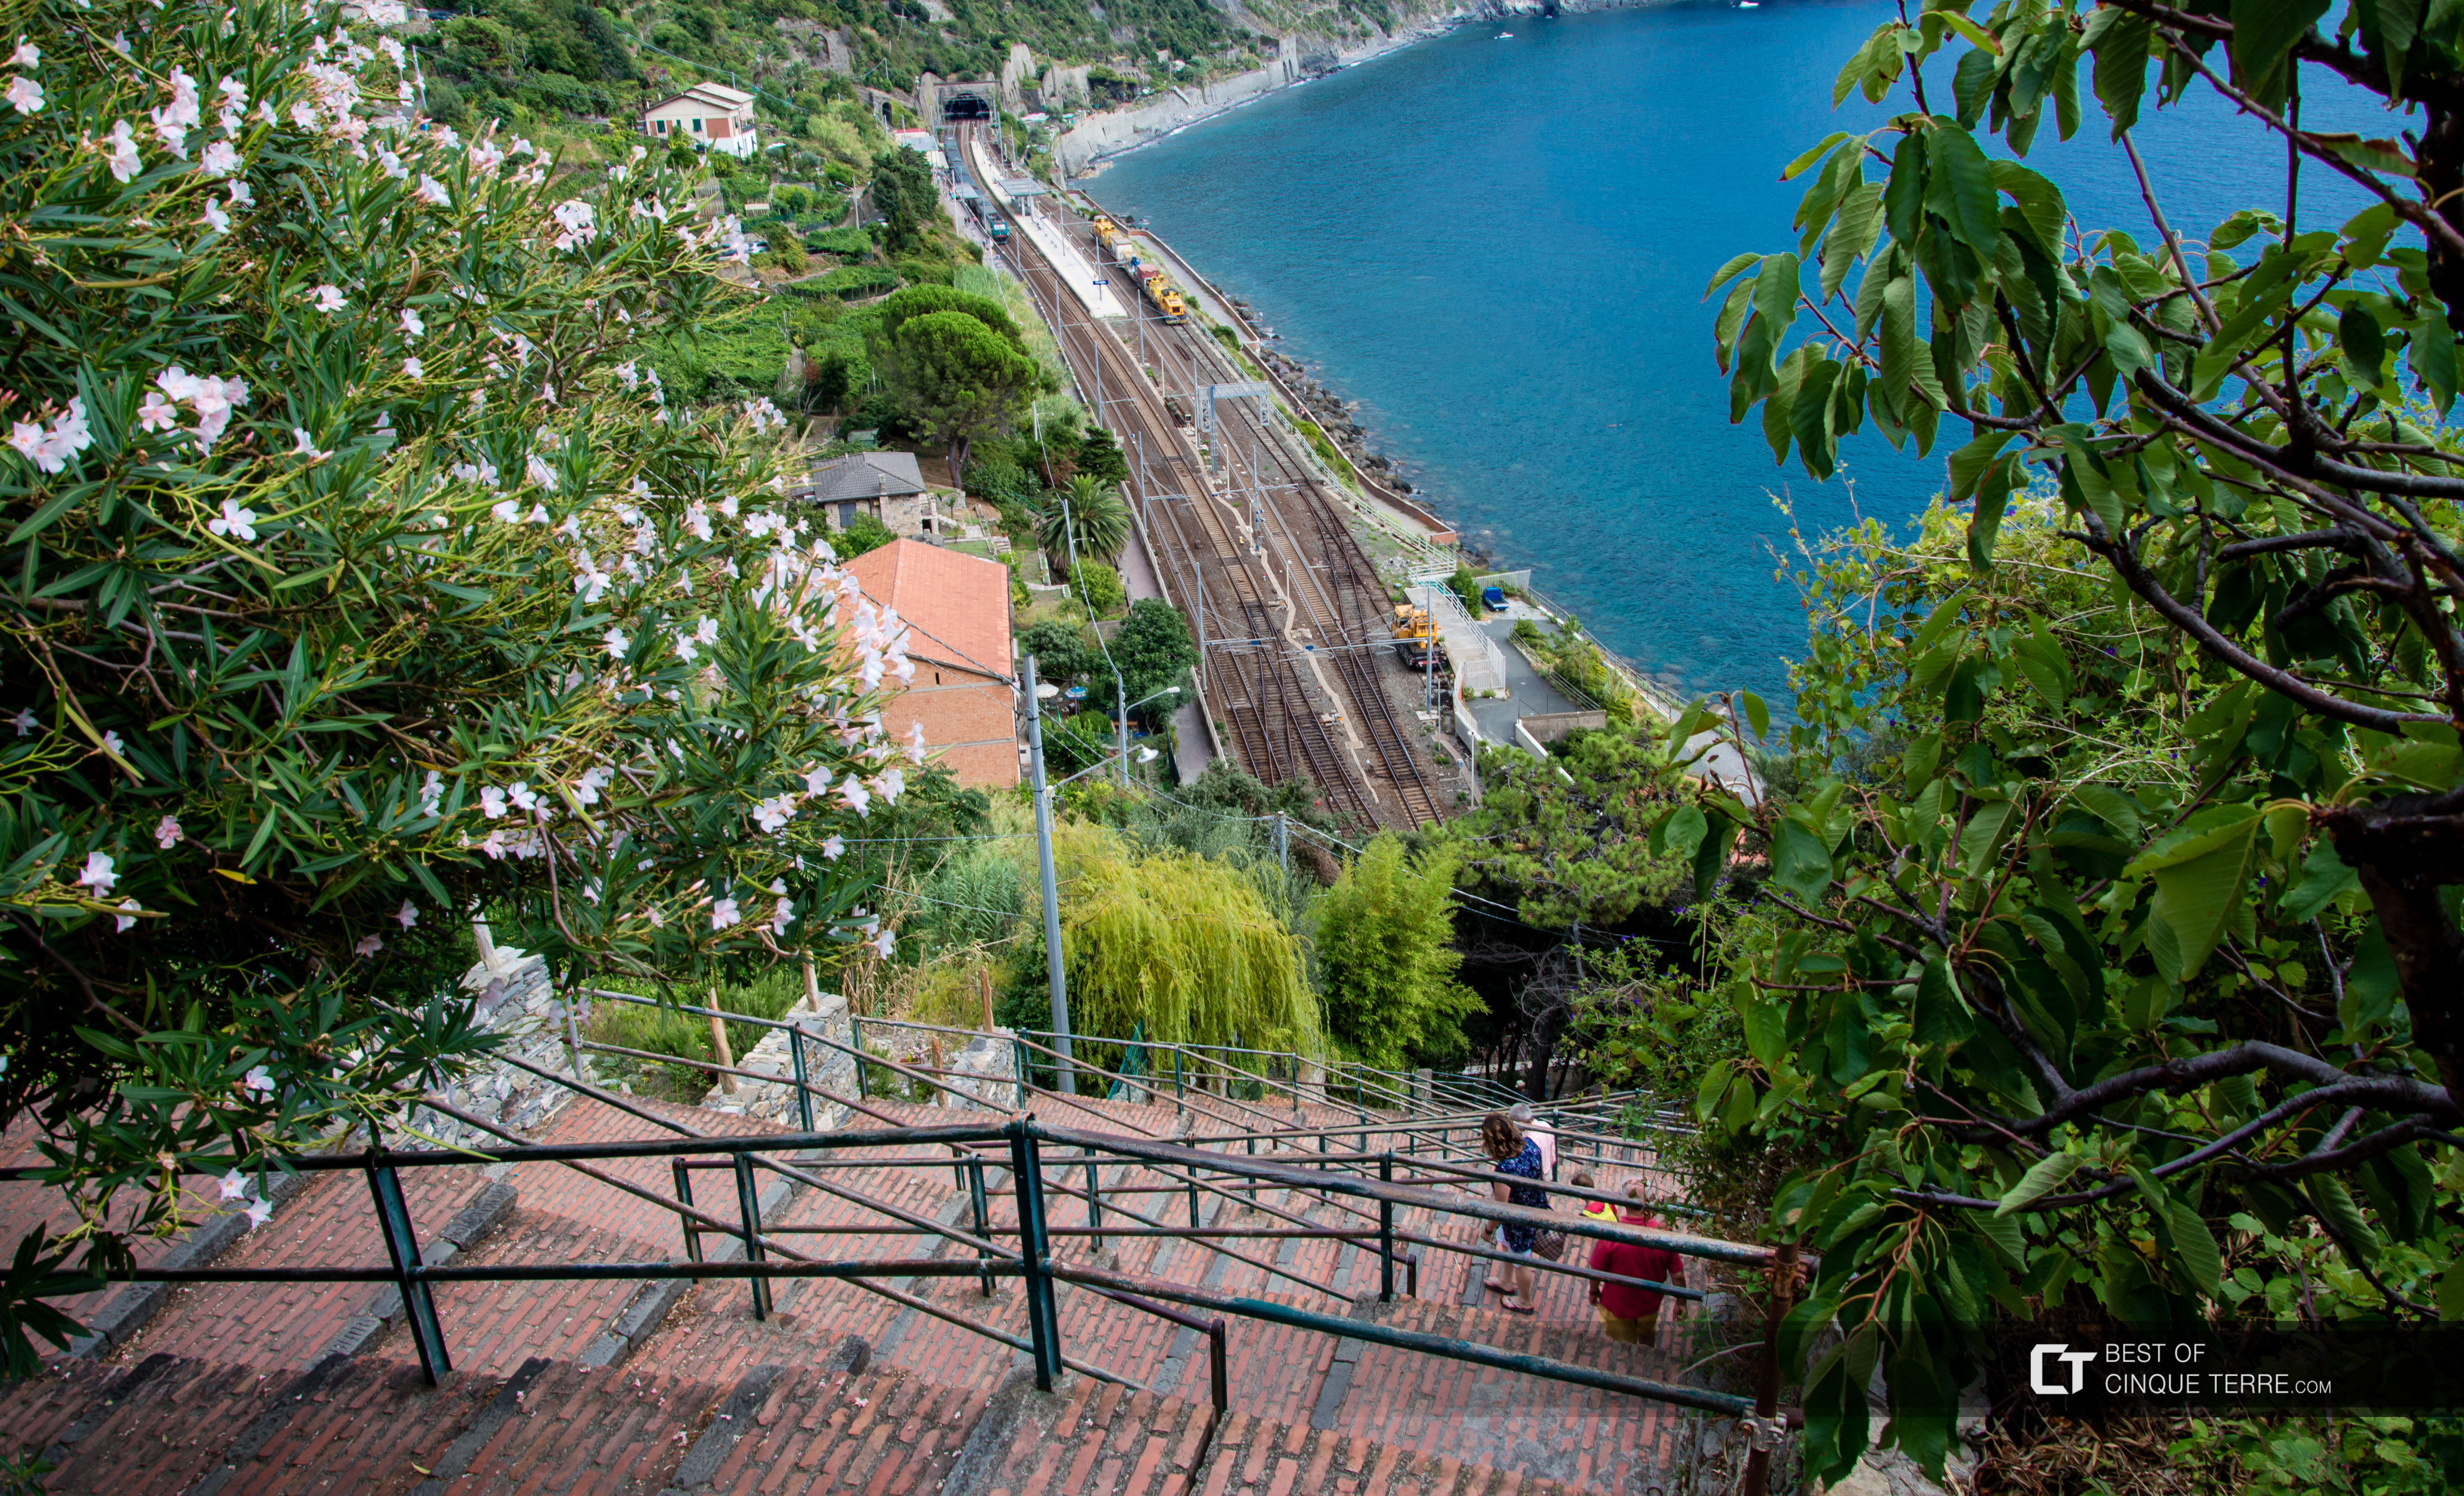 La discesa dal paese alla stazione, Corniglia, Cinque Terre, Italia